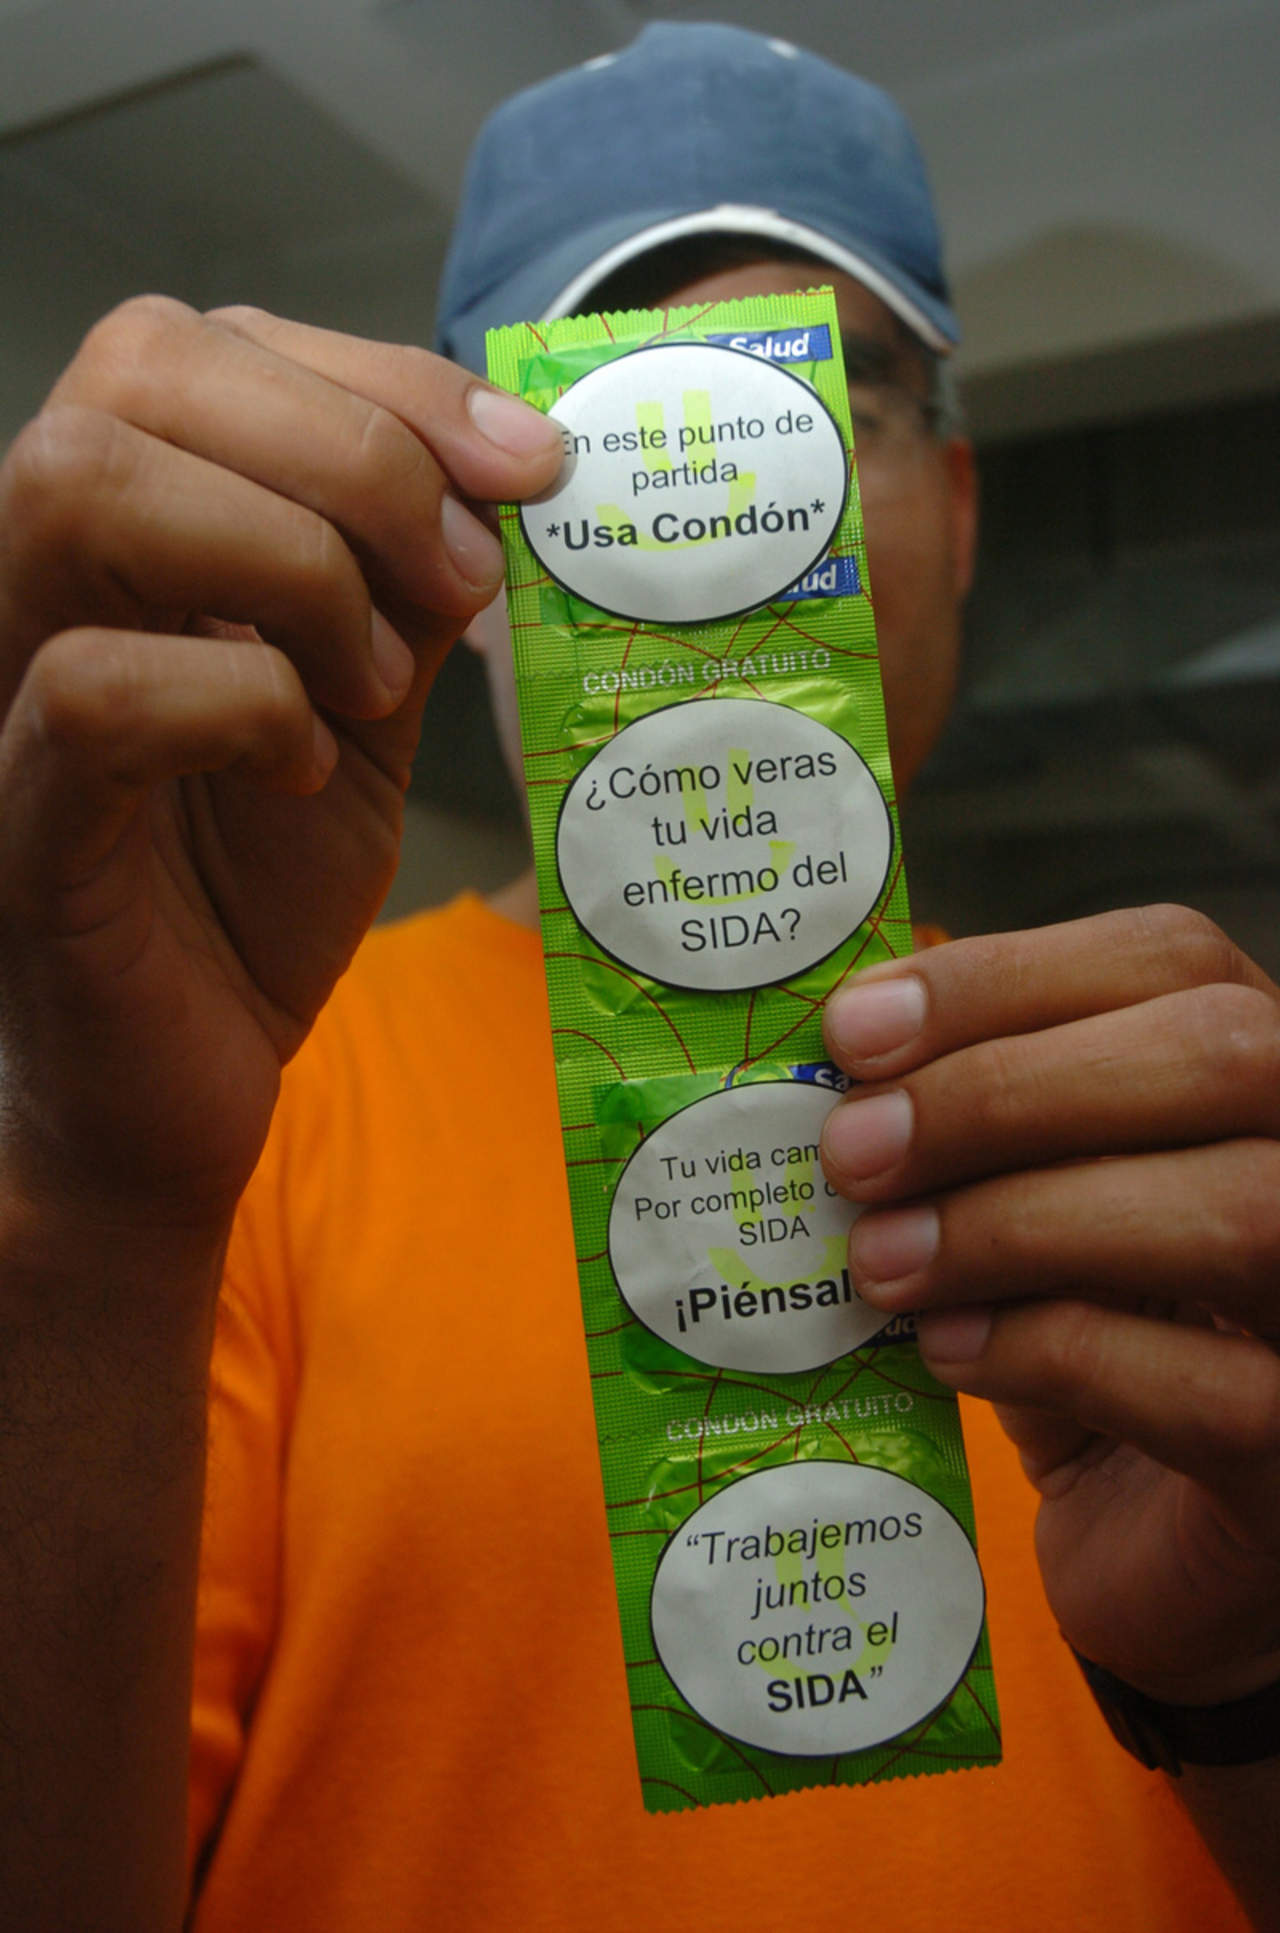  La Comisión Federal de Competencia Económica (Cofece) sancionó con aproximadamente 112 millones de pesos a cinco empresas y a personal de proveedores de condones y sondas de látex por coludirse en licitaciones públicas del sector salud. (ARCHIVO)